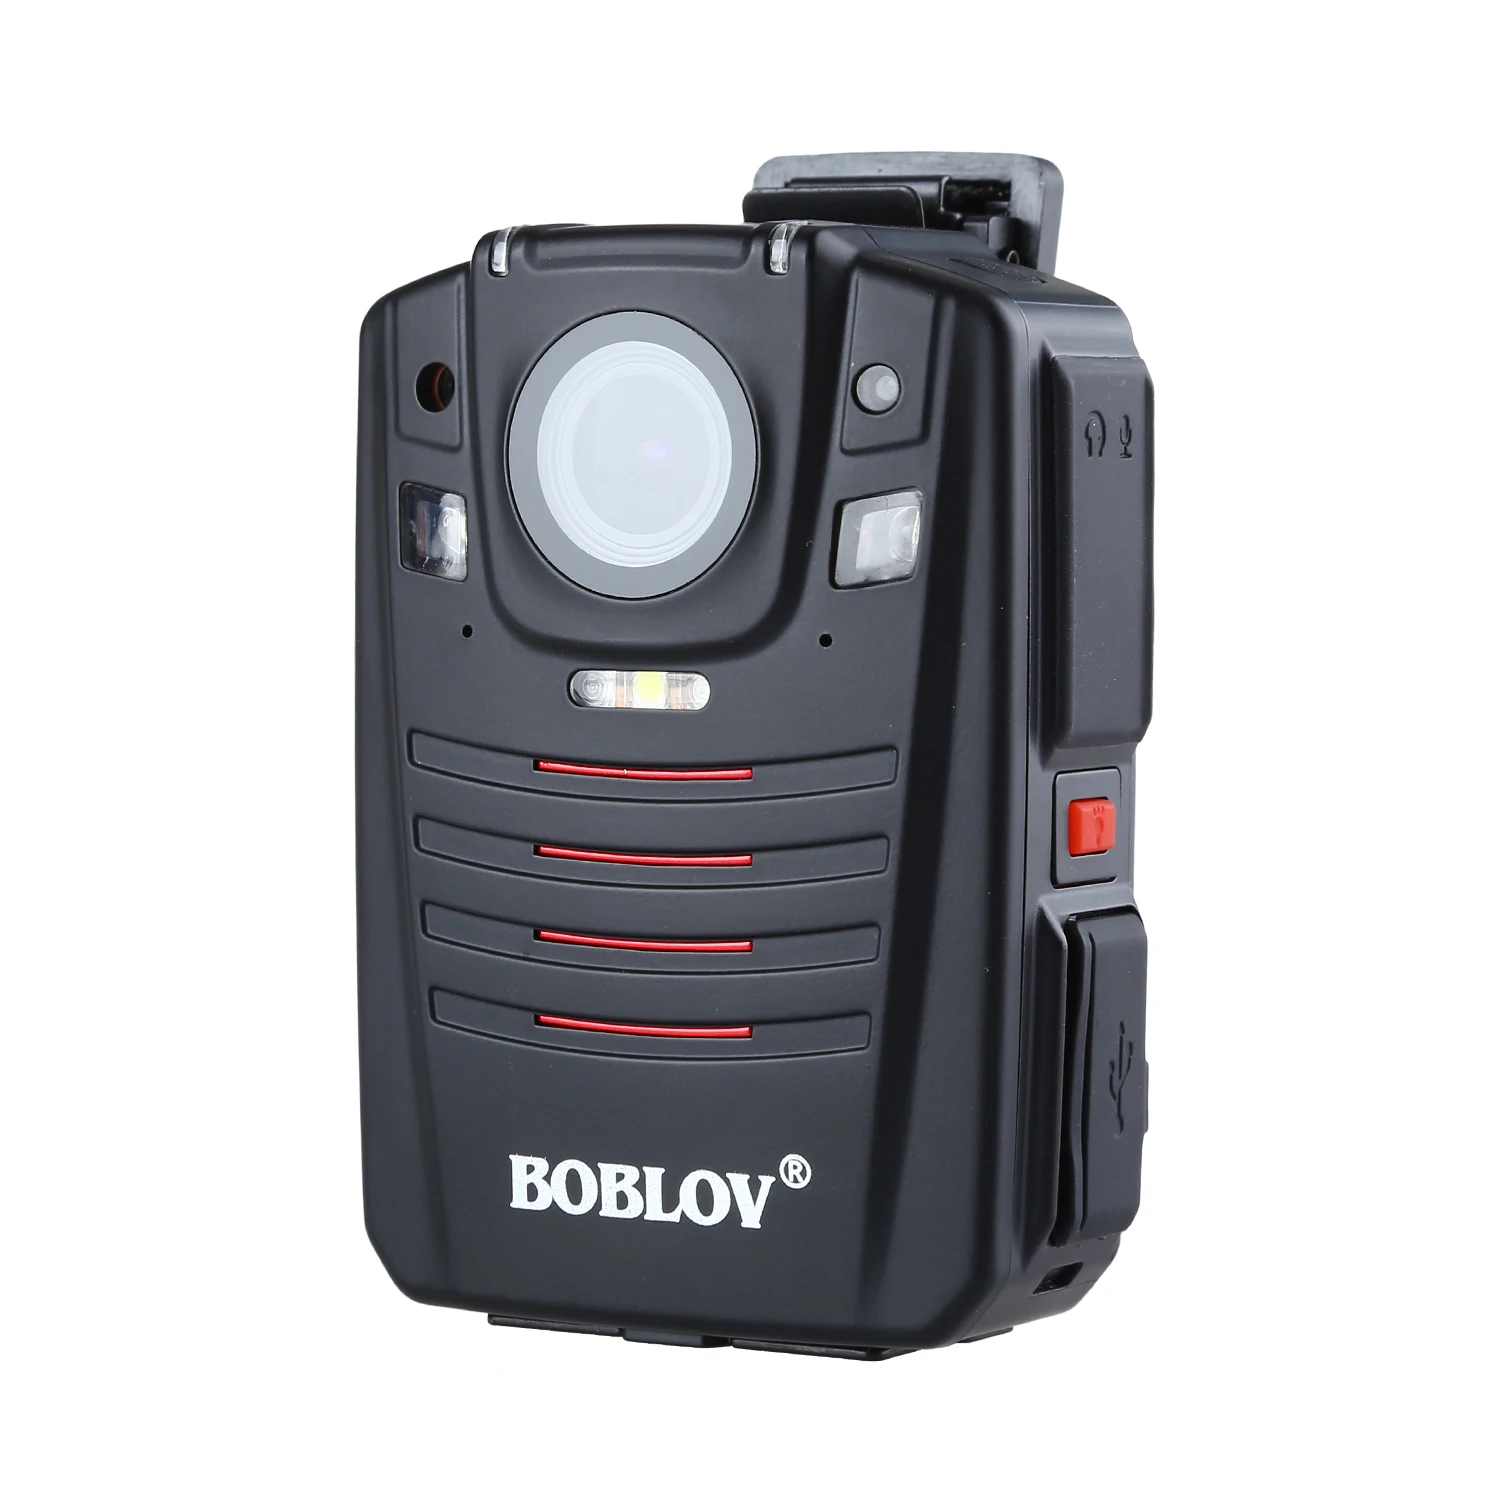 BOBLOV HD66-07 gps 4G Корпус полицейская видео Камера DVR 32 Гб правоохранительных органов топливный фильтр грубой очистки 2 дюймов ЖК-дисплей с 1950 мА/ч, Батарея 170 градусов Широкий формат